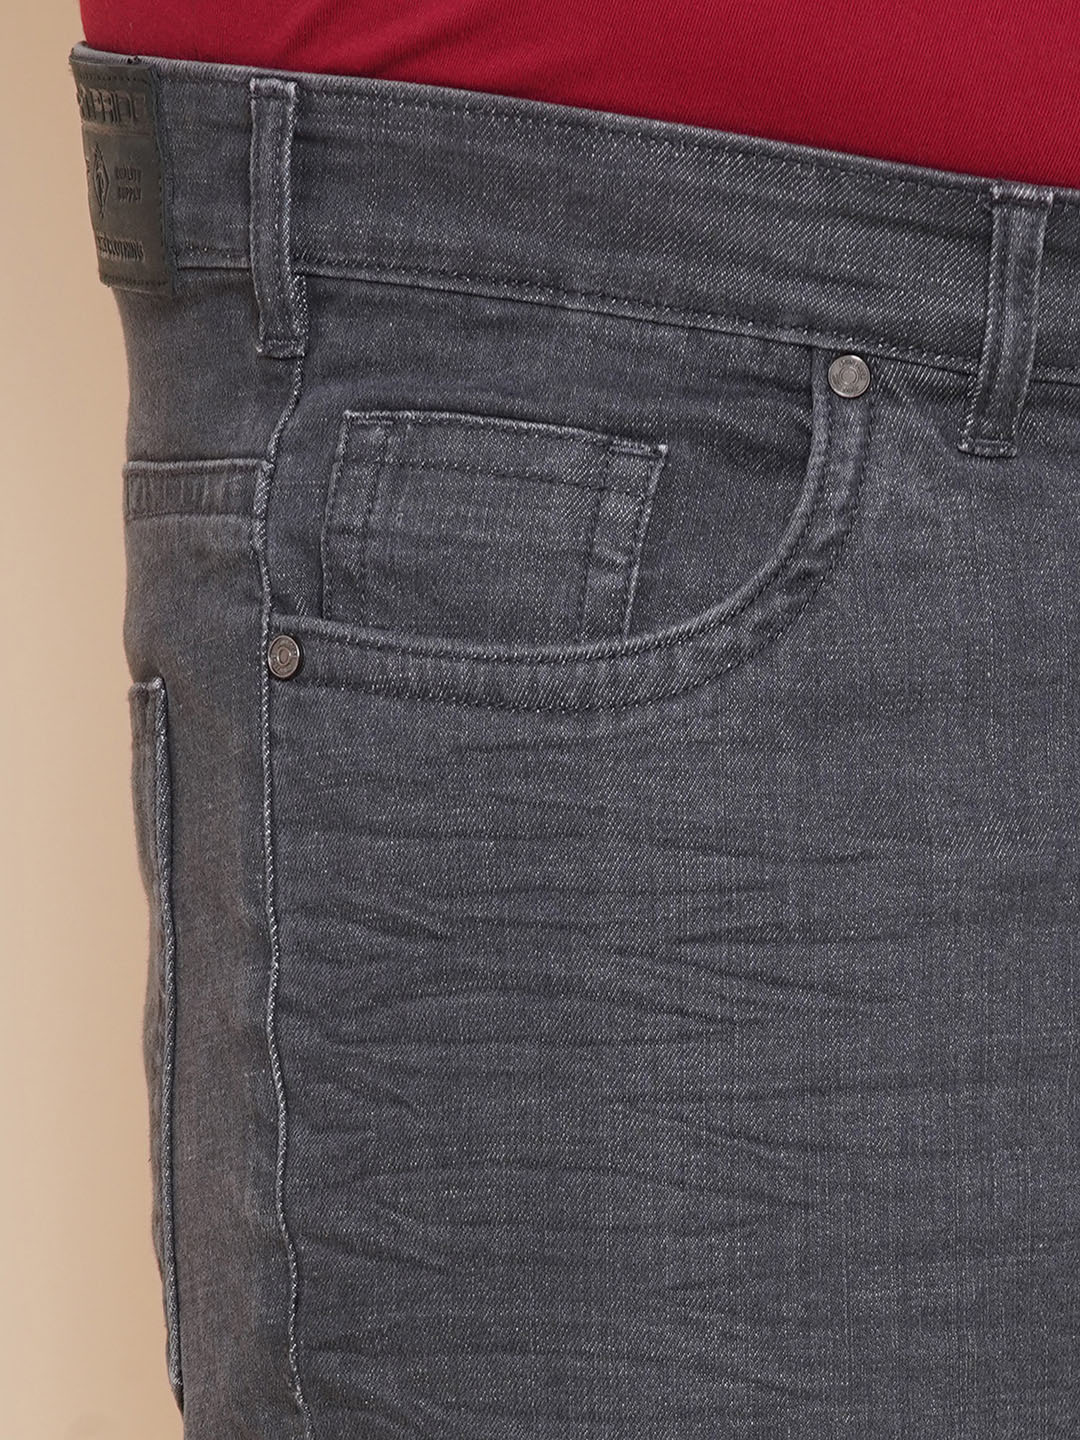 bottomwear/jeans/JPJ12294/jpj12294-2.jpg